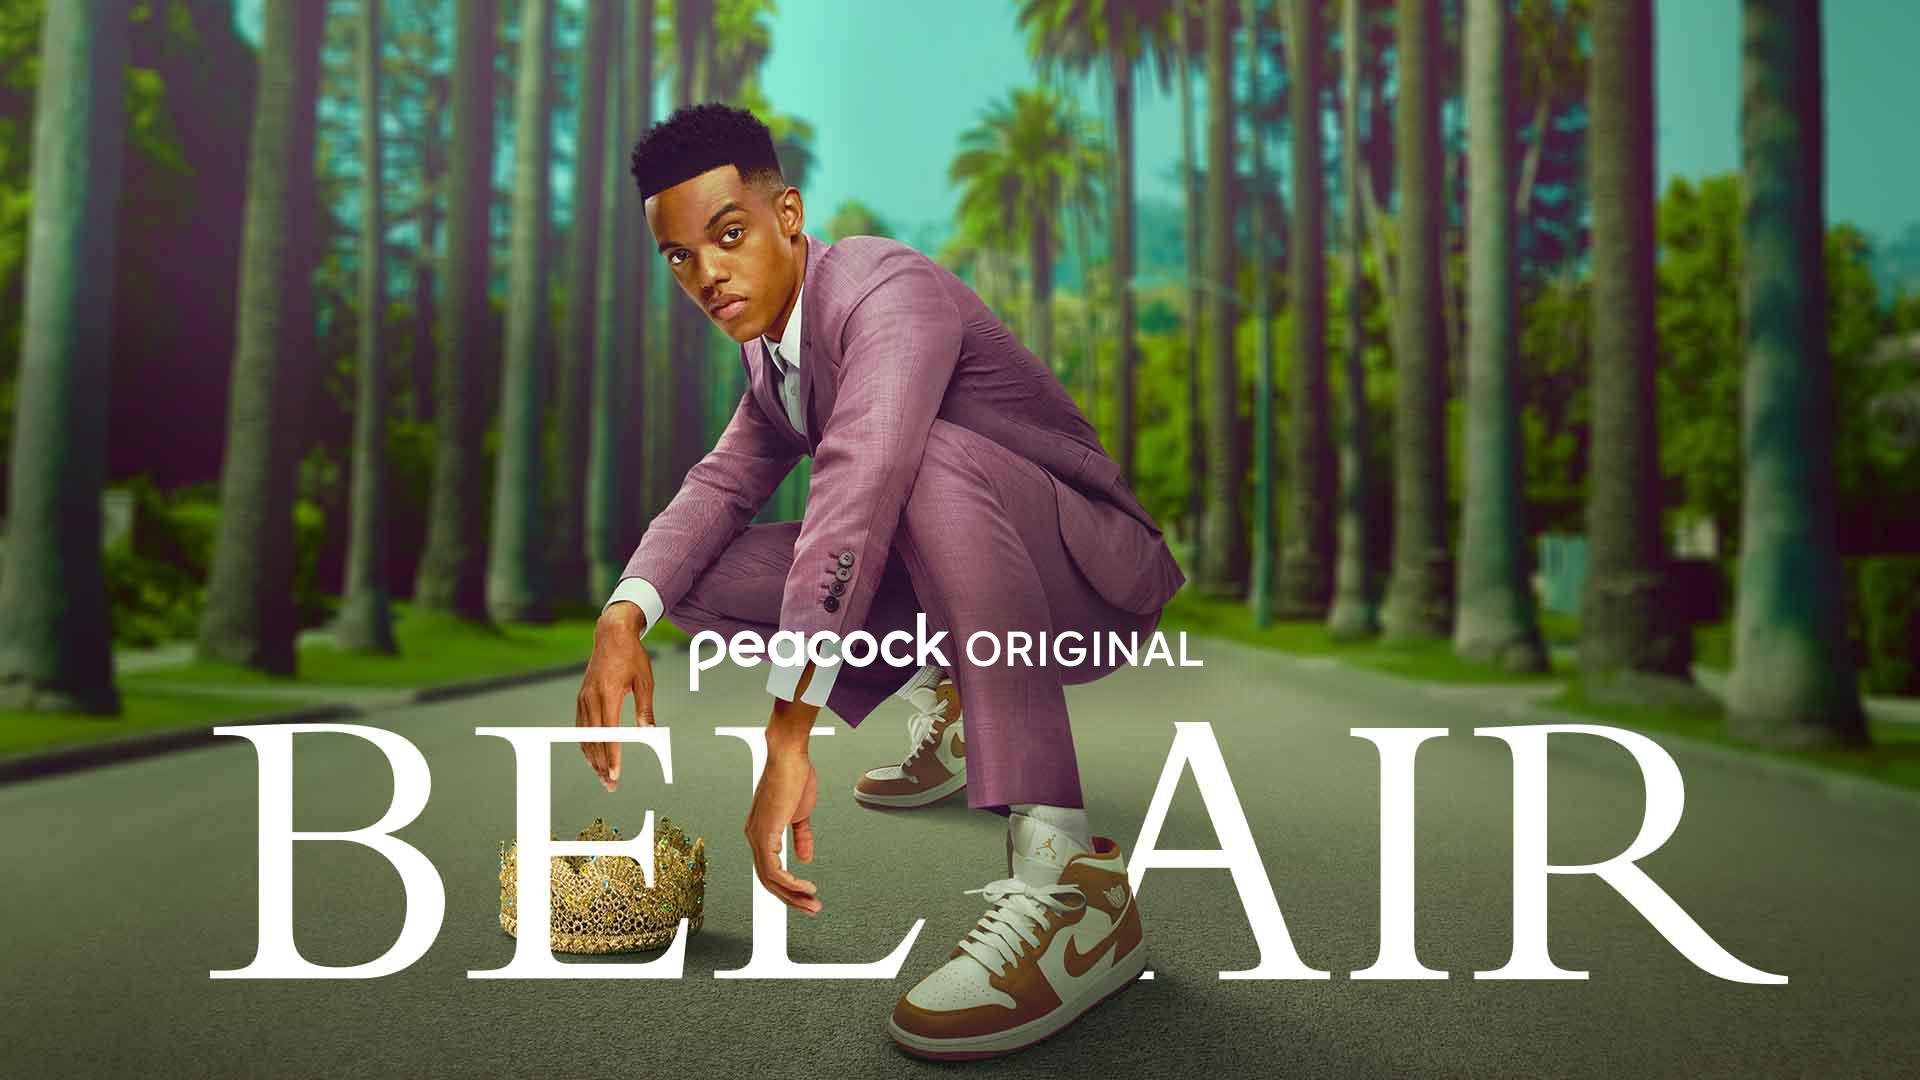 Watch Bel-Air Online - Stream Full Episodes